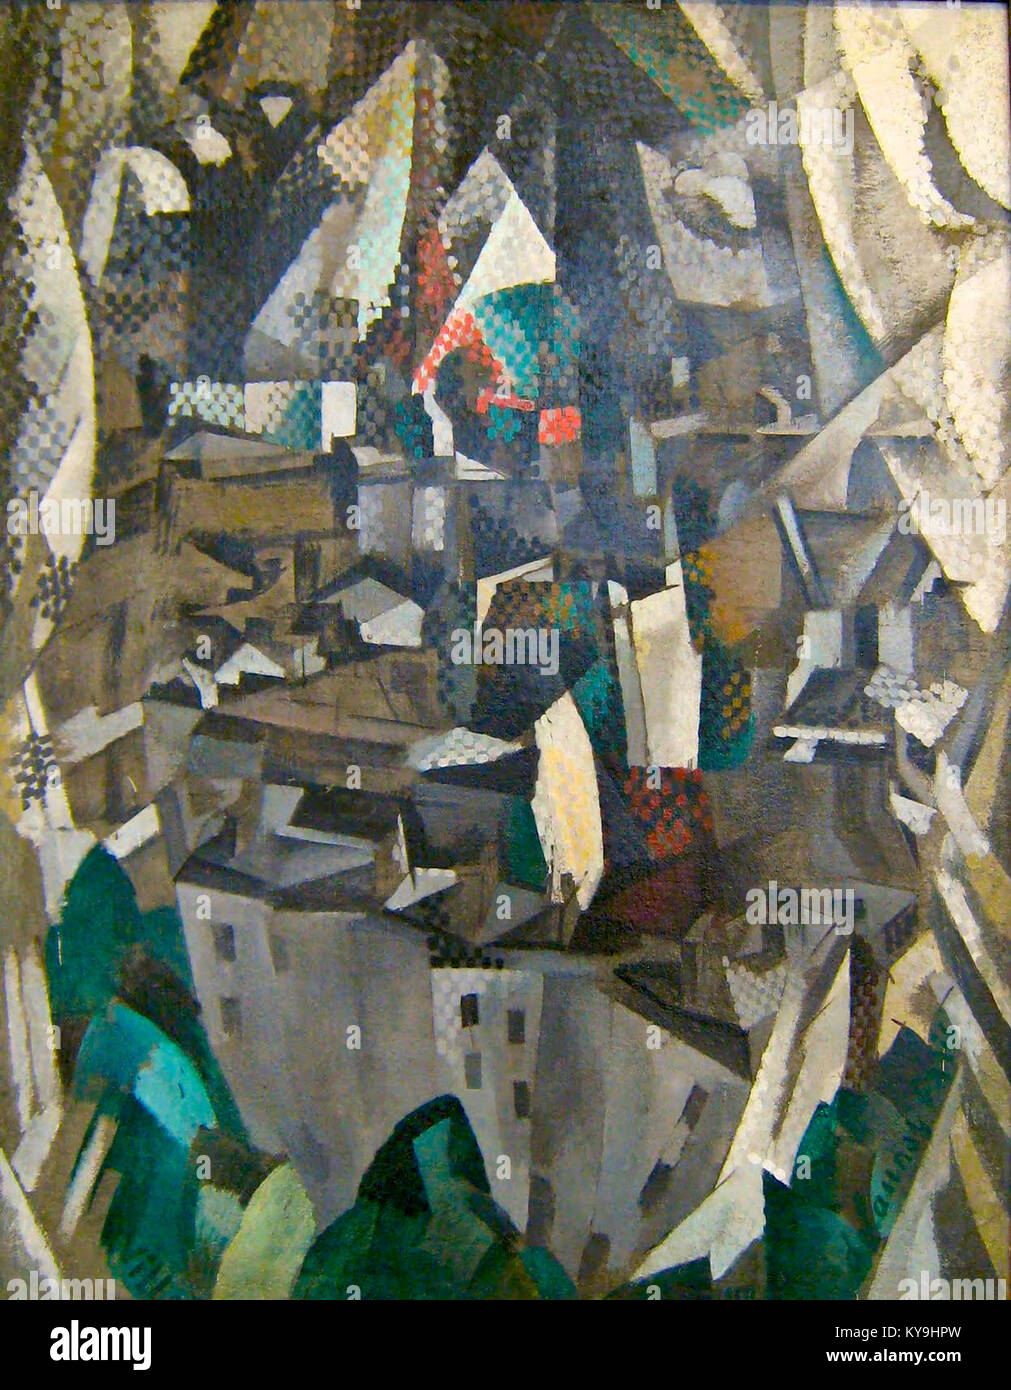 Robert Delaunay, 1910, la ville no. 2, huile sur toile, 146 x 114 cm, Musée National d'Art Moderne, Centre Georges Pompidou, Paris Banque D'Images